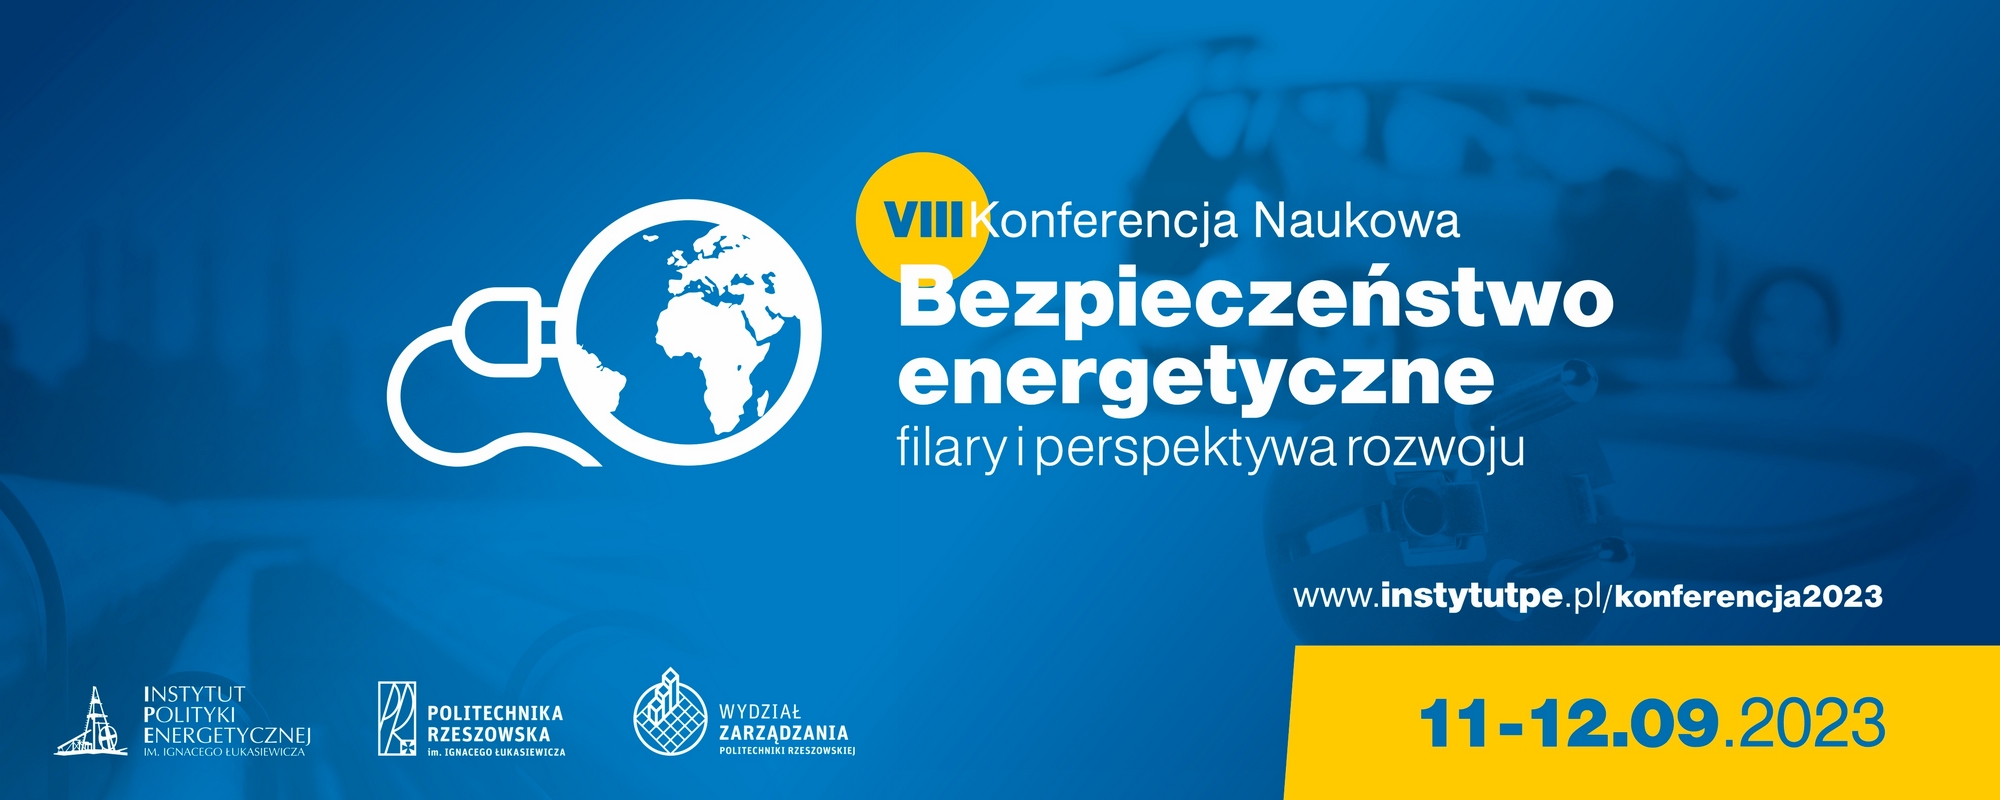 VIII Konferencja Naukowa 2023 “Bezpieczeństwo energetyczne – filary i perspektywa rozwoju”